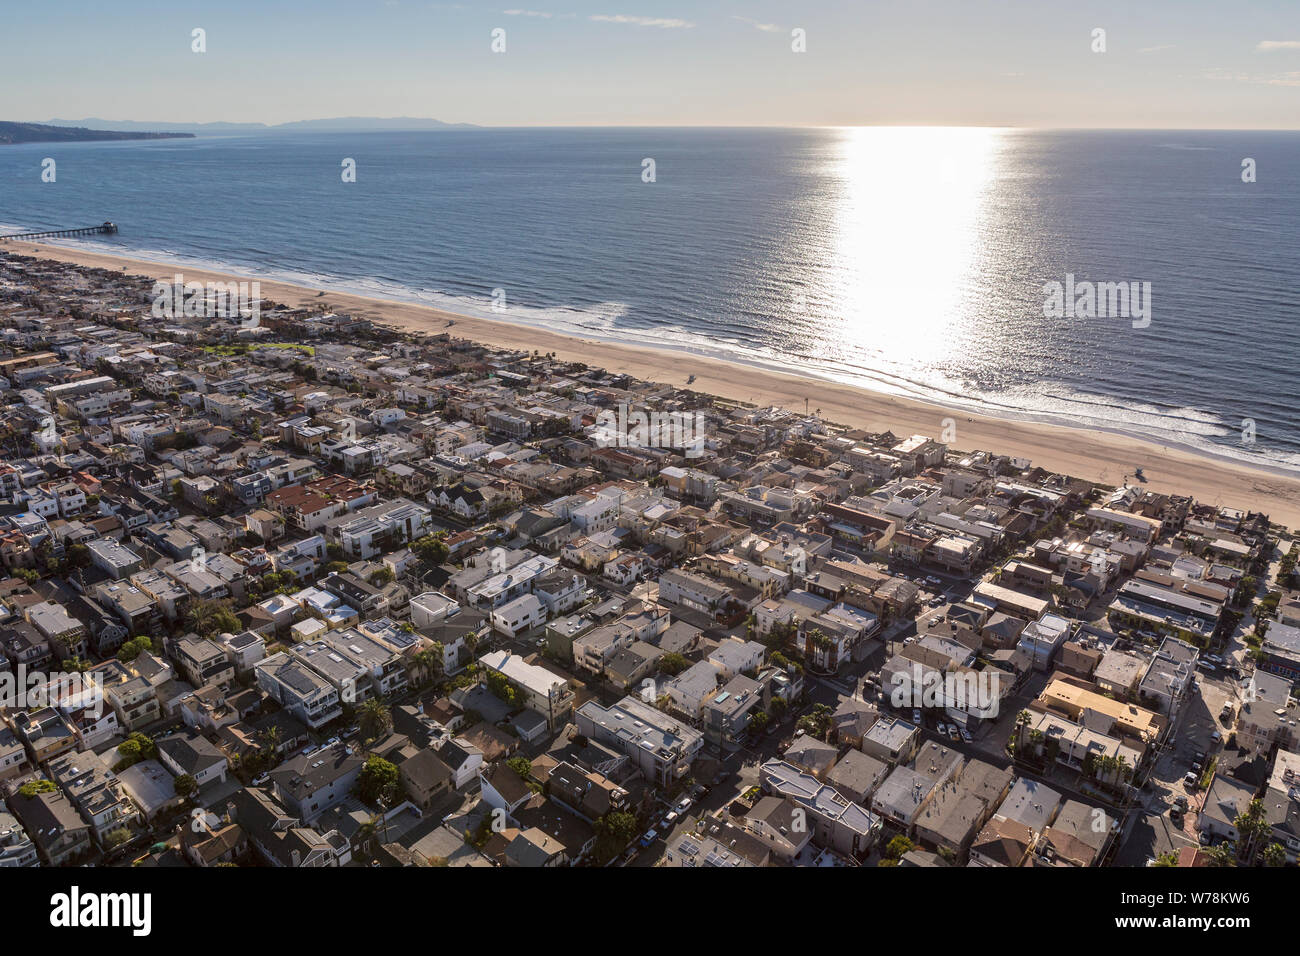 Manhattan Beach Pacific ocean view homes surplombant la baie de Santa Monica en Californie du Sud. Banque D'Images